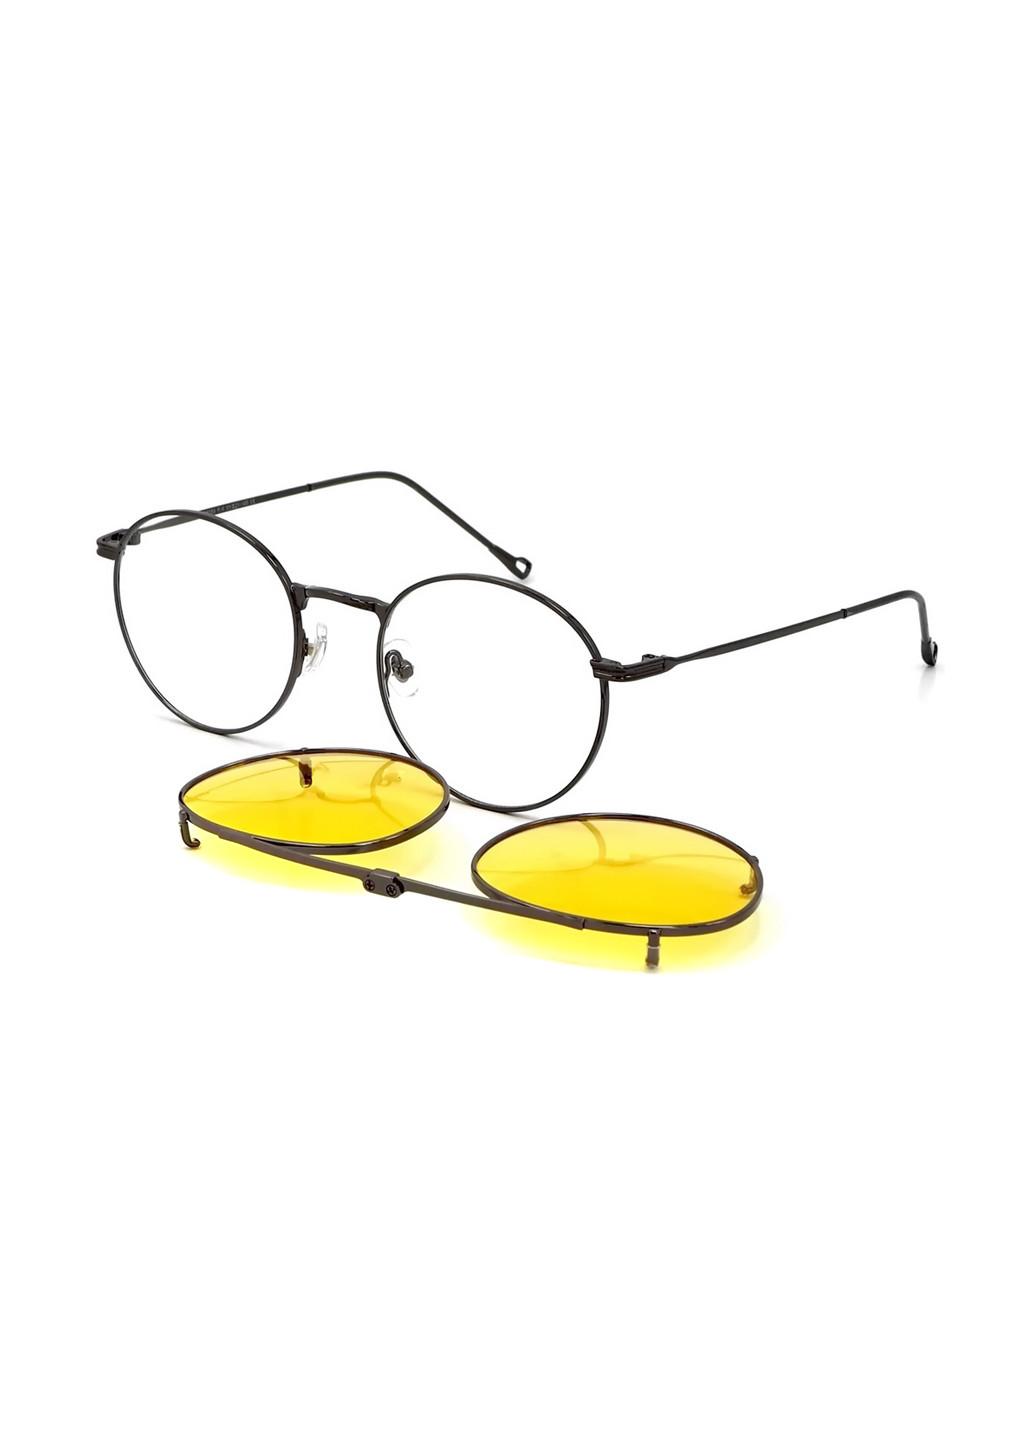 Солнцезащитные очки Havvs hv68055 (254201100)